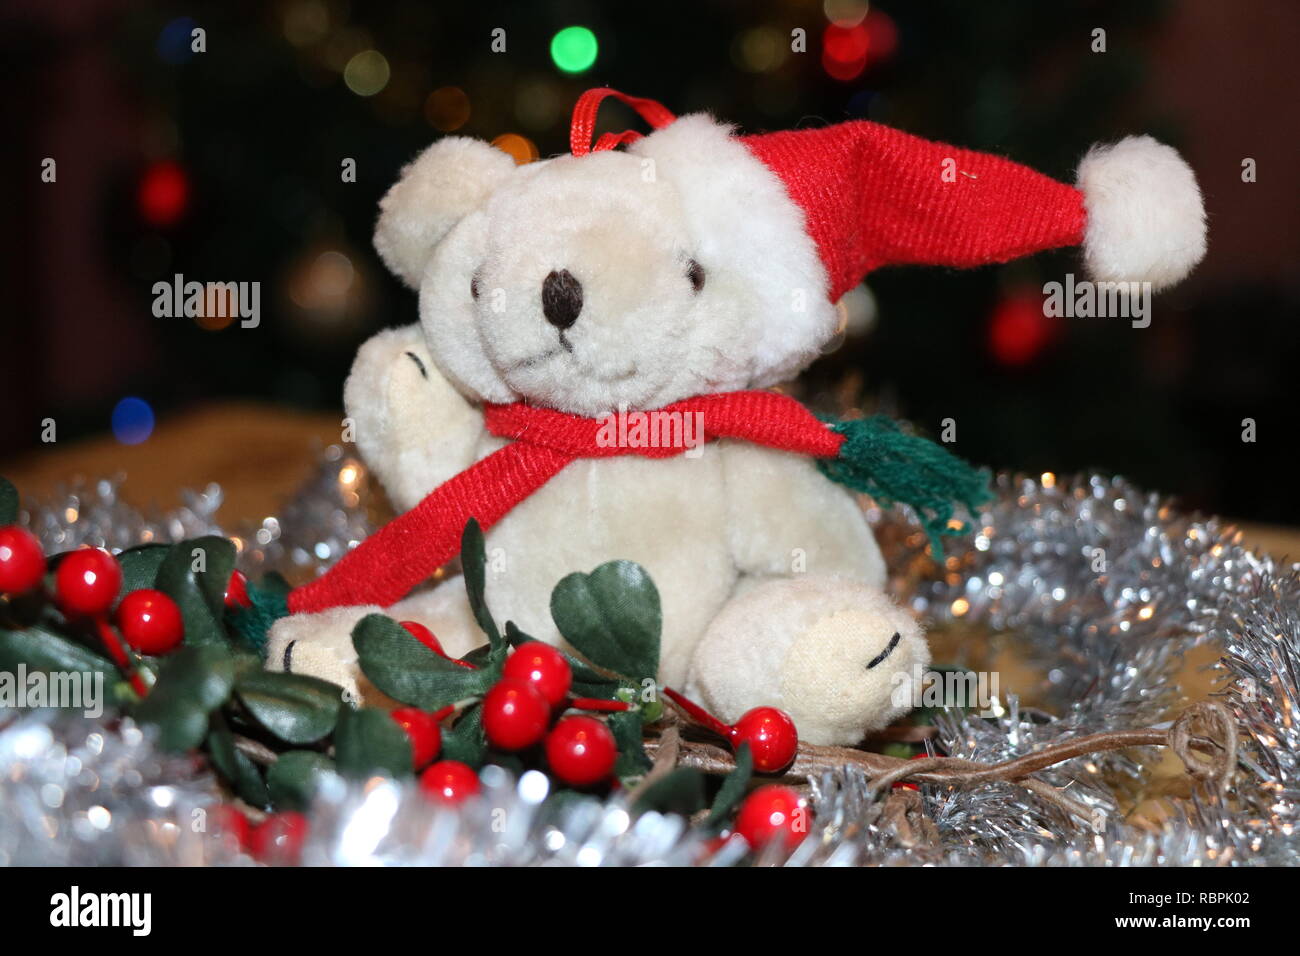 Cute Cuddly I LOVE WALES Teddy Bear NEW Gift Present Birthday Xmas 